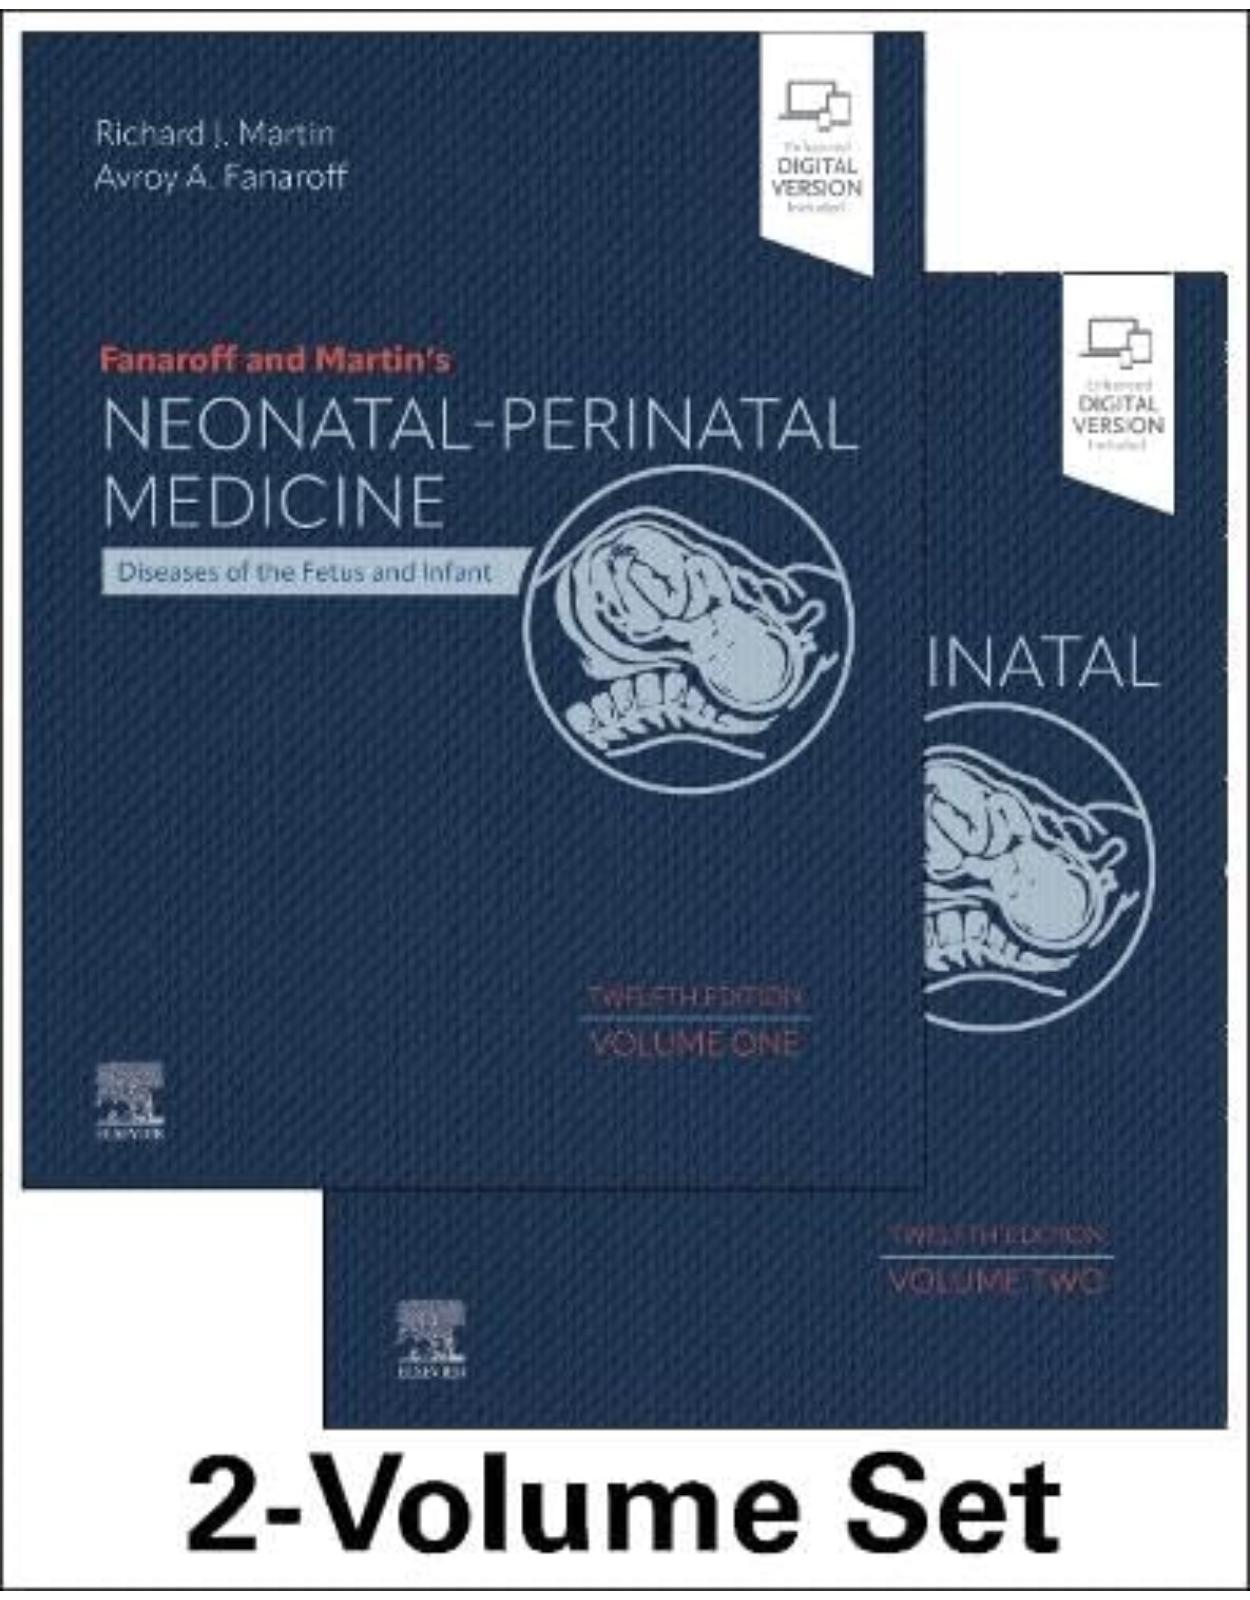 Fanaroff and Martin’s Neonatal-Perinatal Medicine, 2-Volume Set, 12th Edition